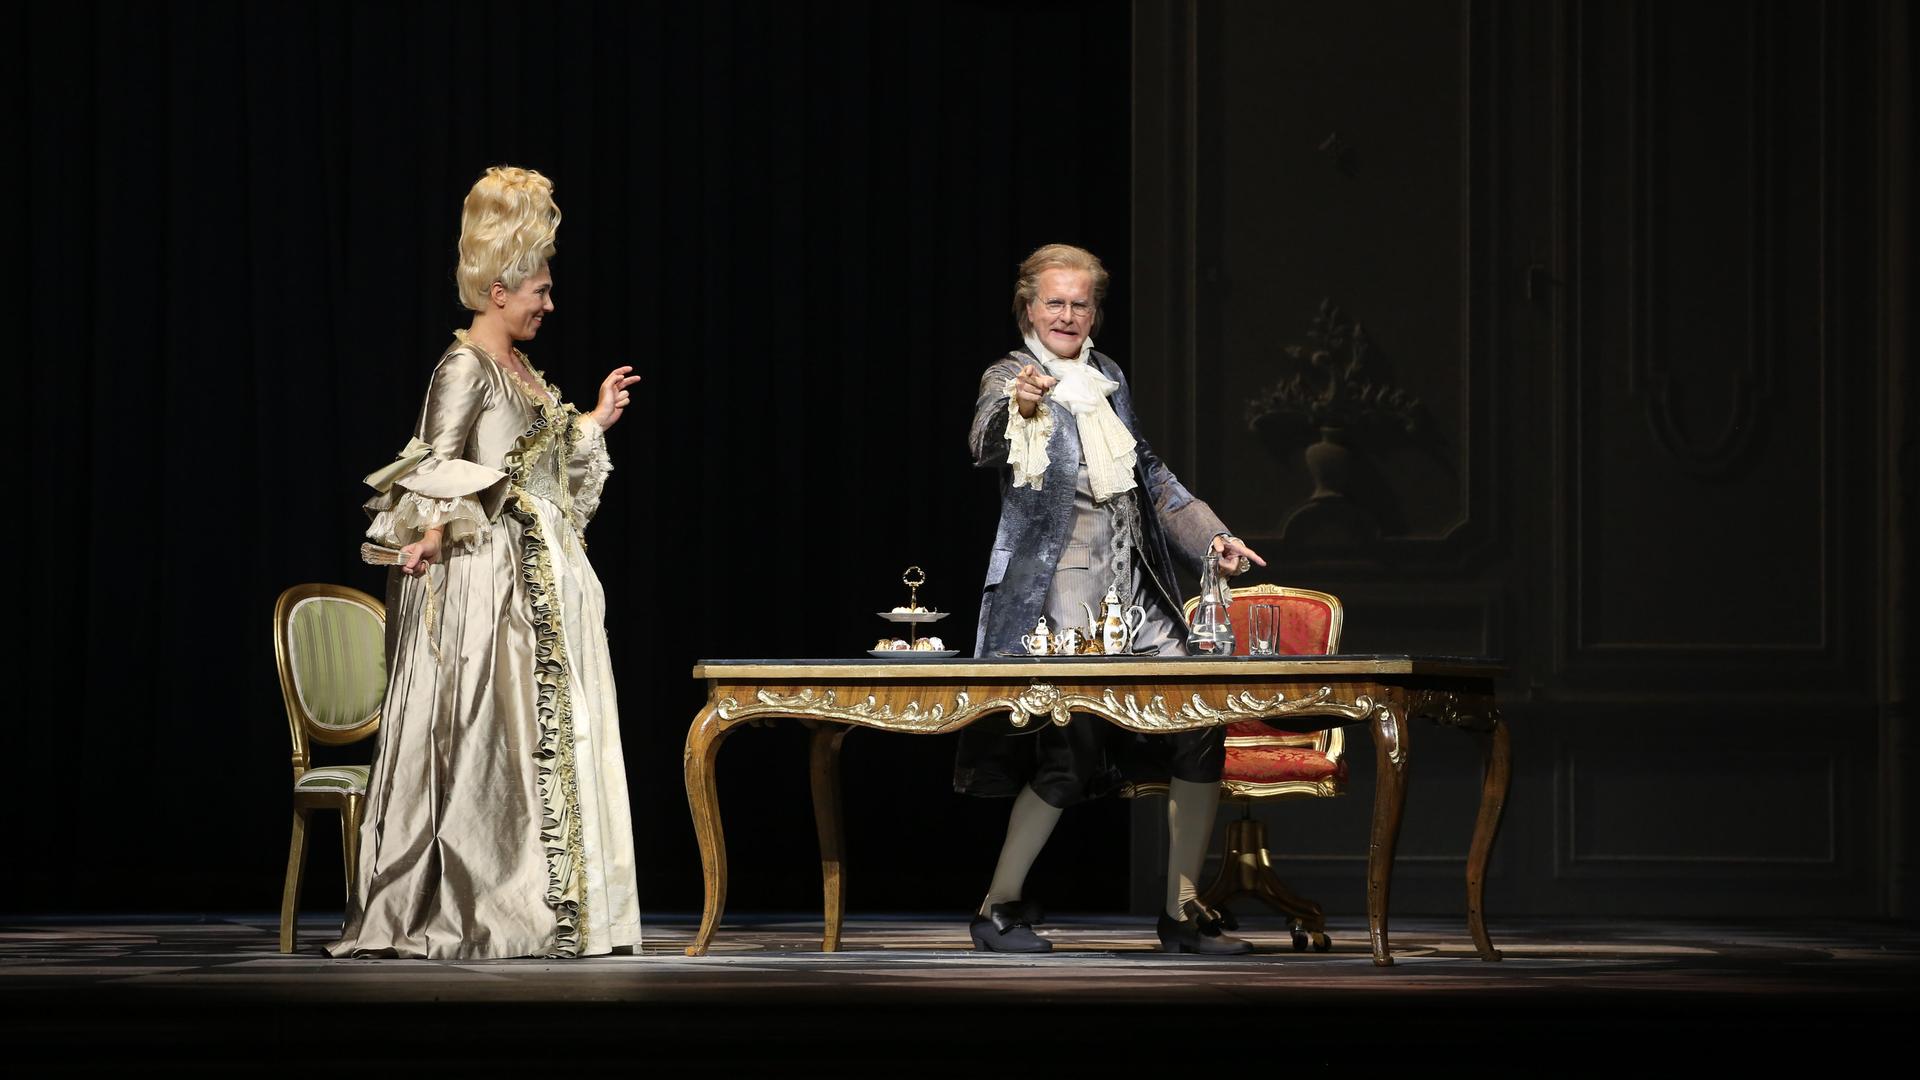 Harald Schmidt steht als König Ludwig XV. hinter einem Schreibtisch und zeigt ins Publikum. Und Annette Dasch als Gräfin Dubarry steht neben dem Tisch und schaut ihn an.